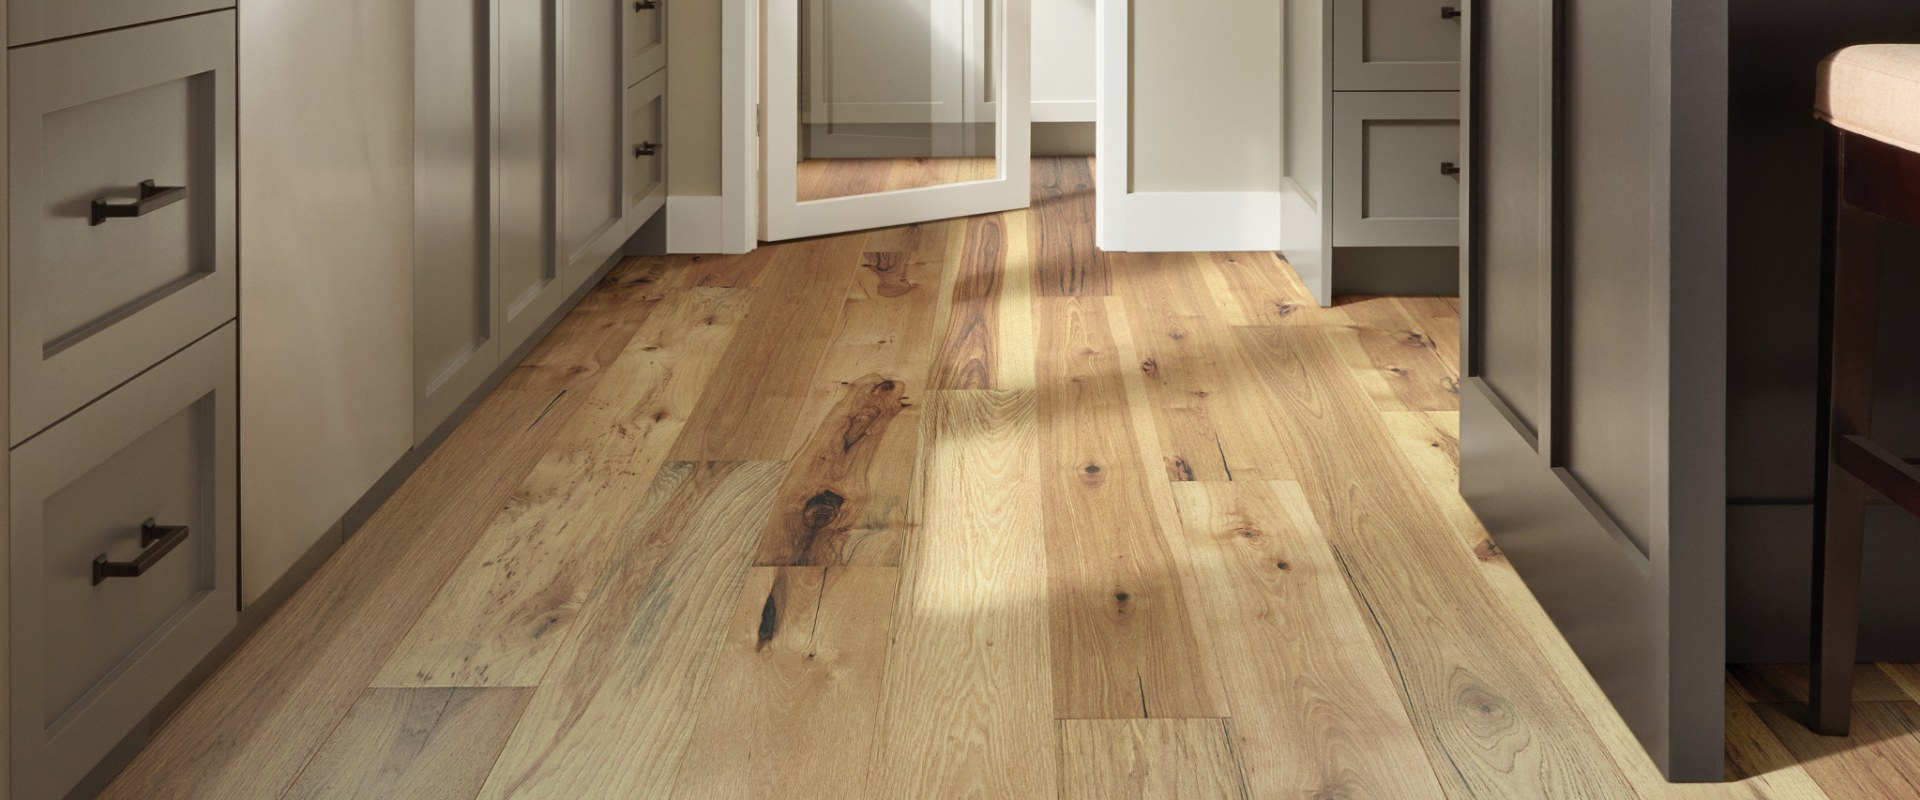 What hardwood flooring is waterproof?